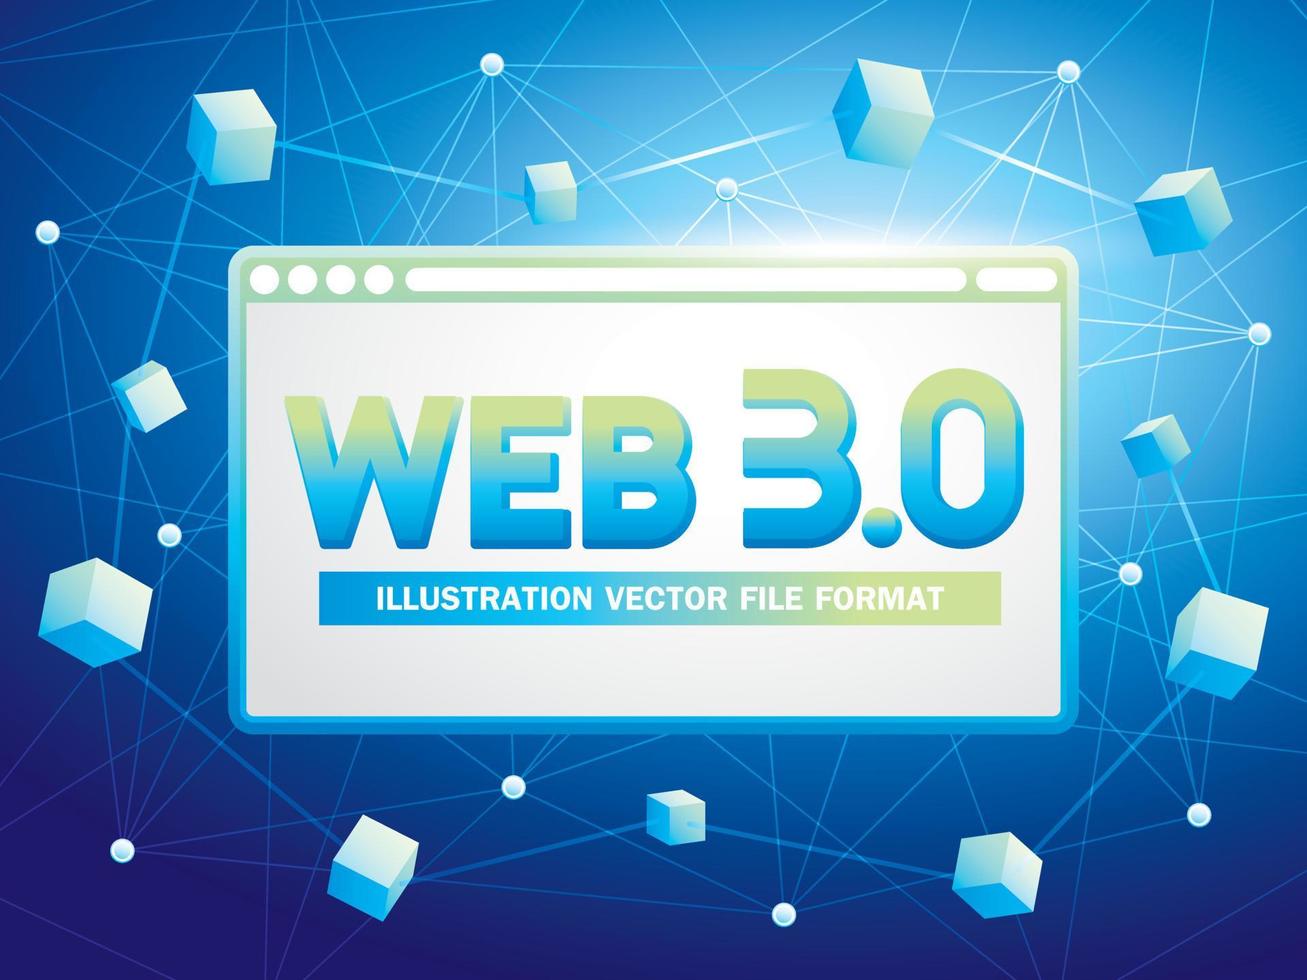 webb 3.0 text med hemsida och blockchain grafisk element illustration vektor för presentation eller baner konstverk